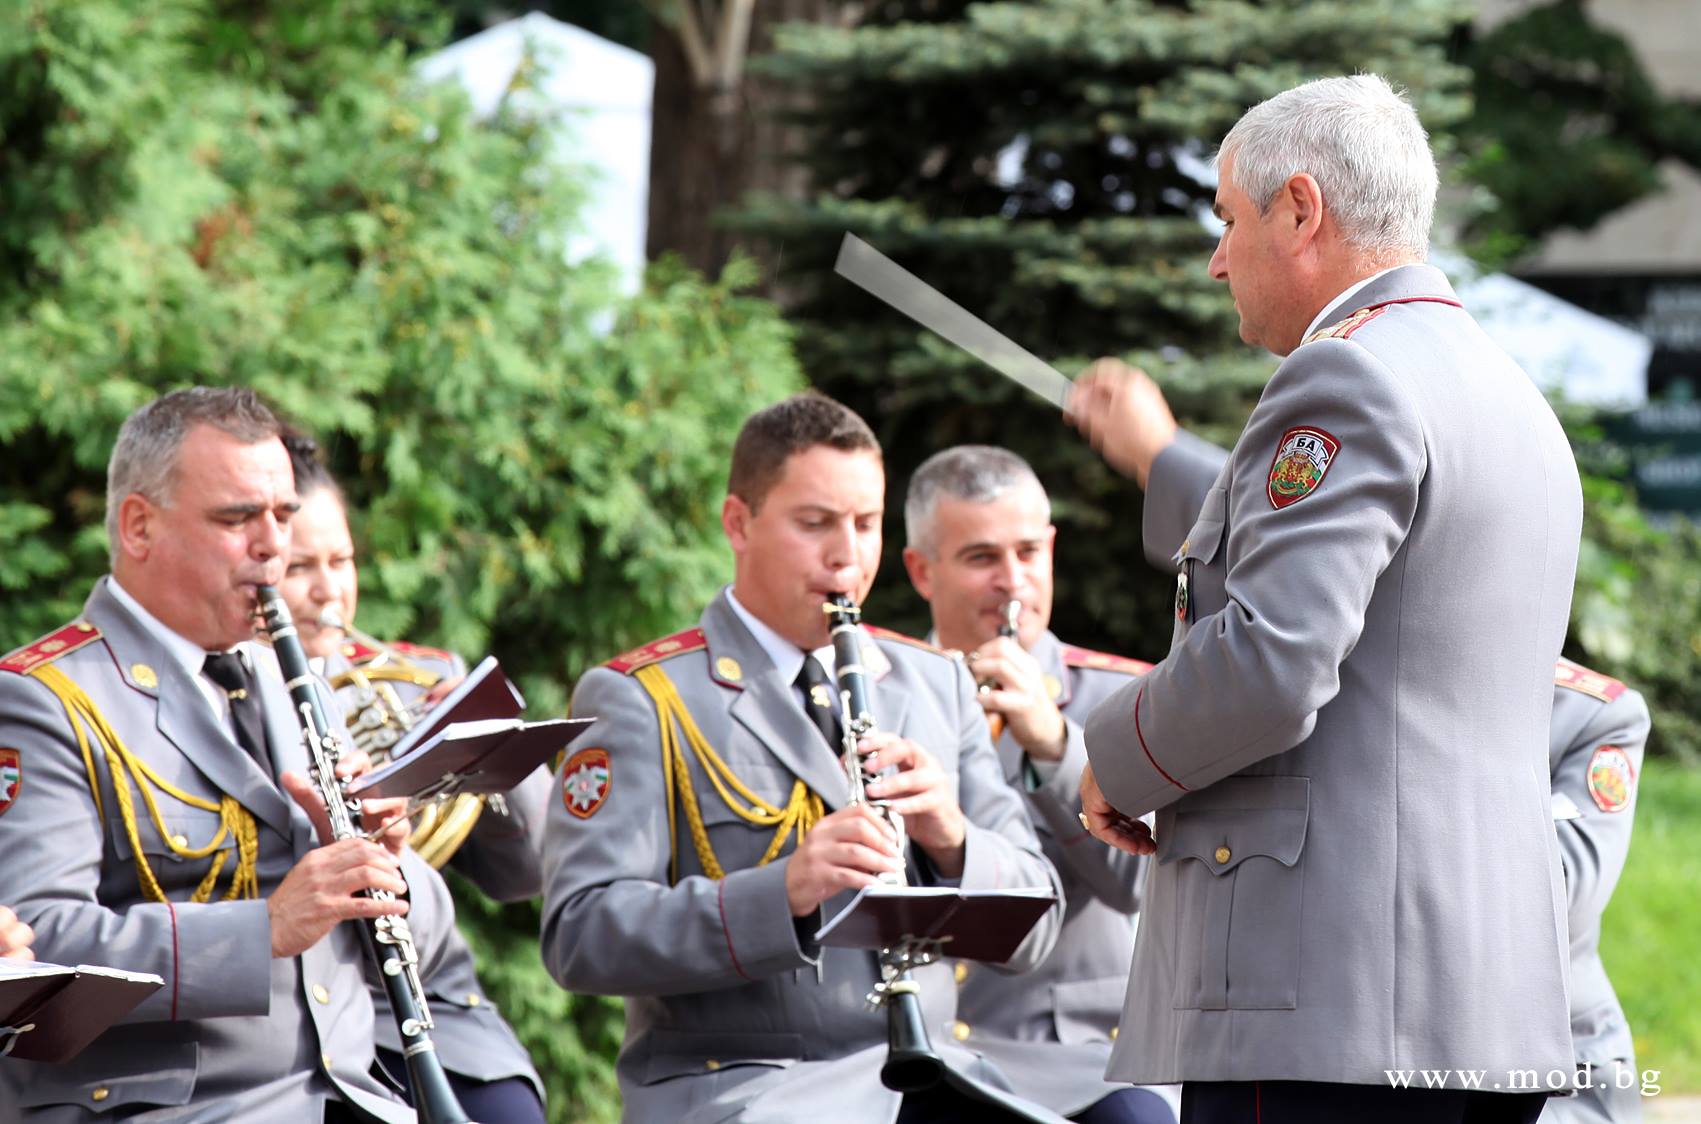 Празничен концерт пред Народния театър по повод 140 години Българска армия